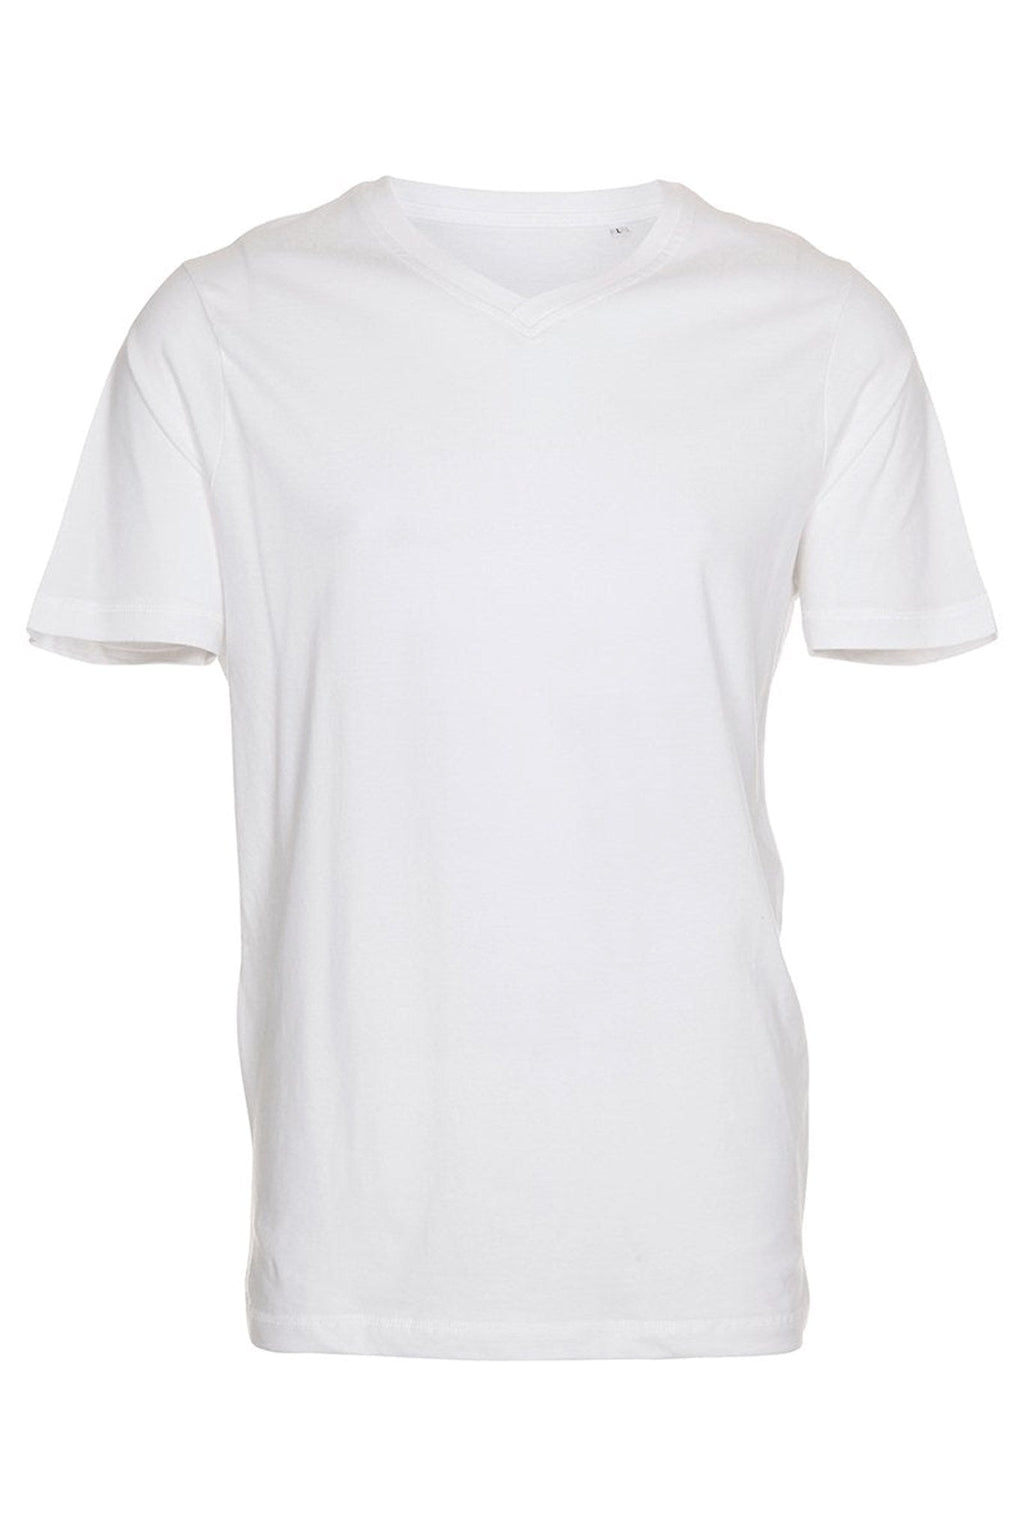 Basic Vneck t-shirt  - White